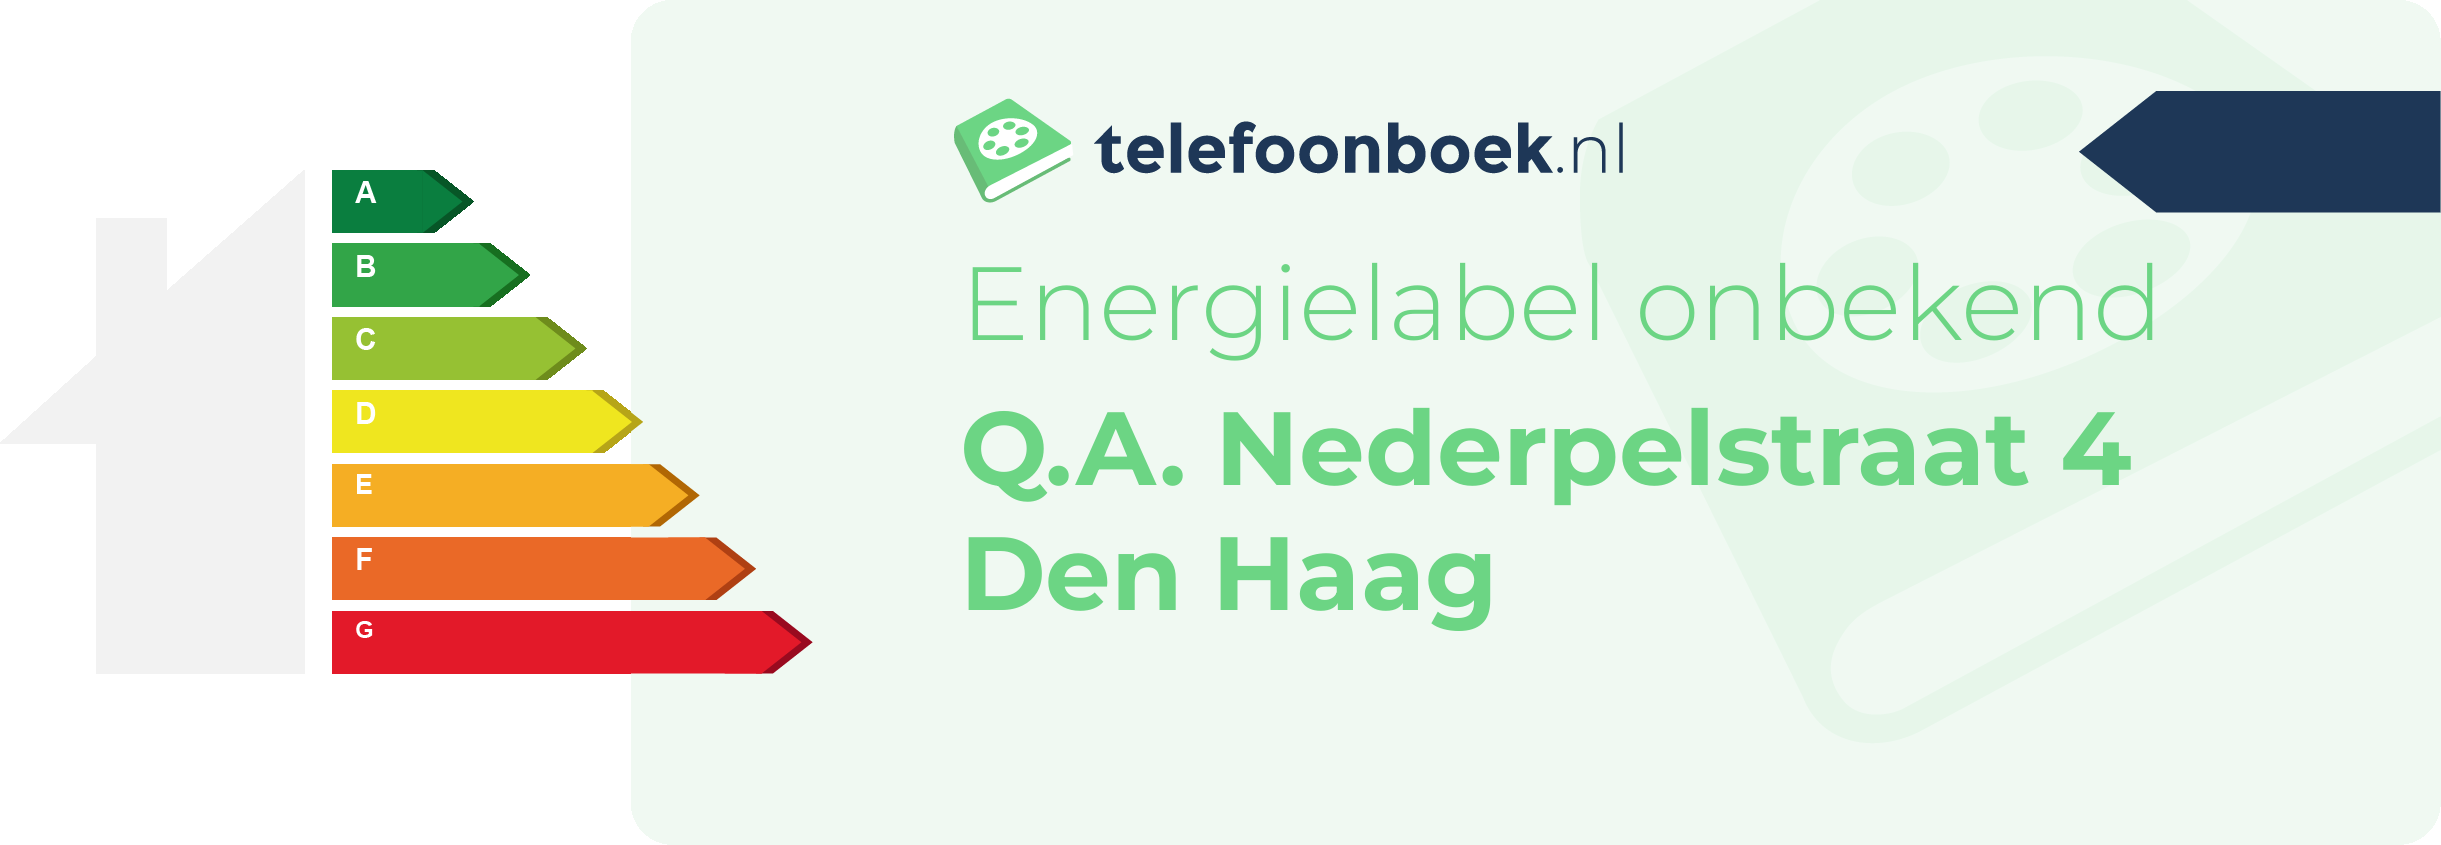 Energielabel Q.A. Nederpelstraat 4 Den Haag